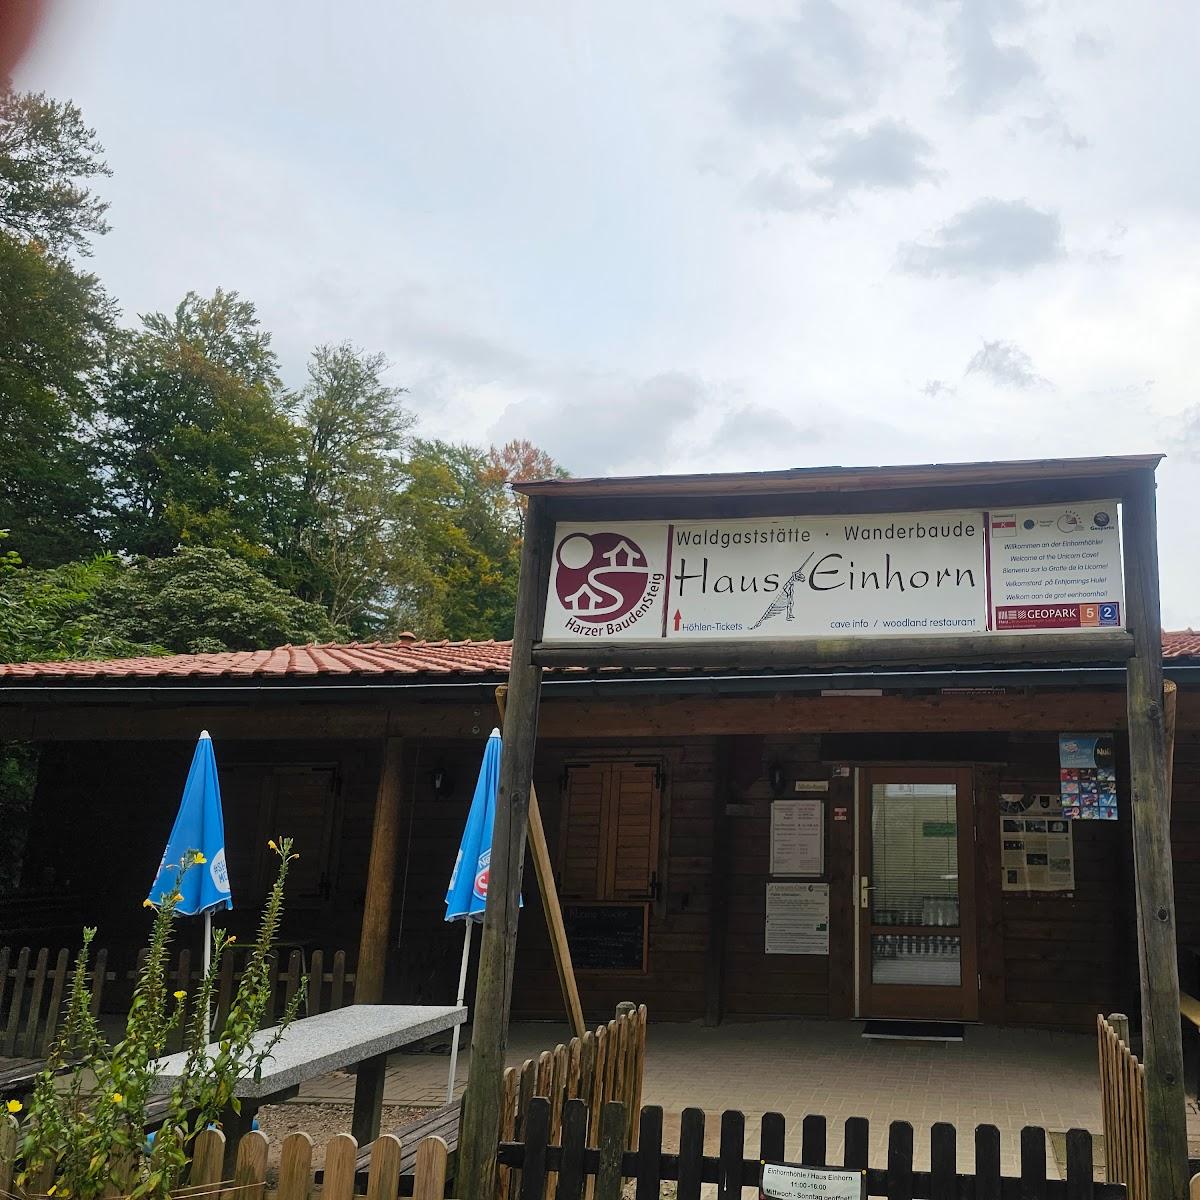 Restaurant "Haus Einhorn" in Herzberg am Harz